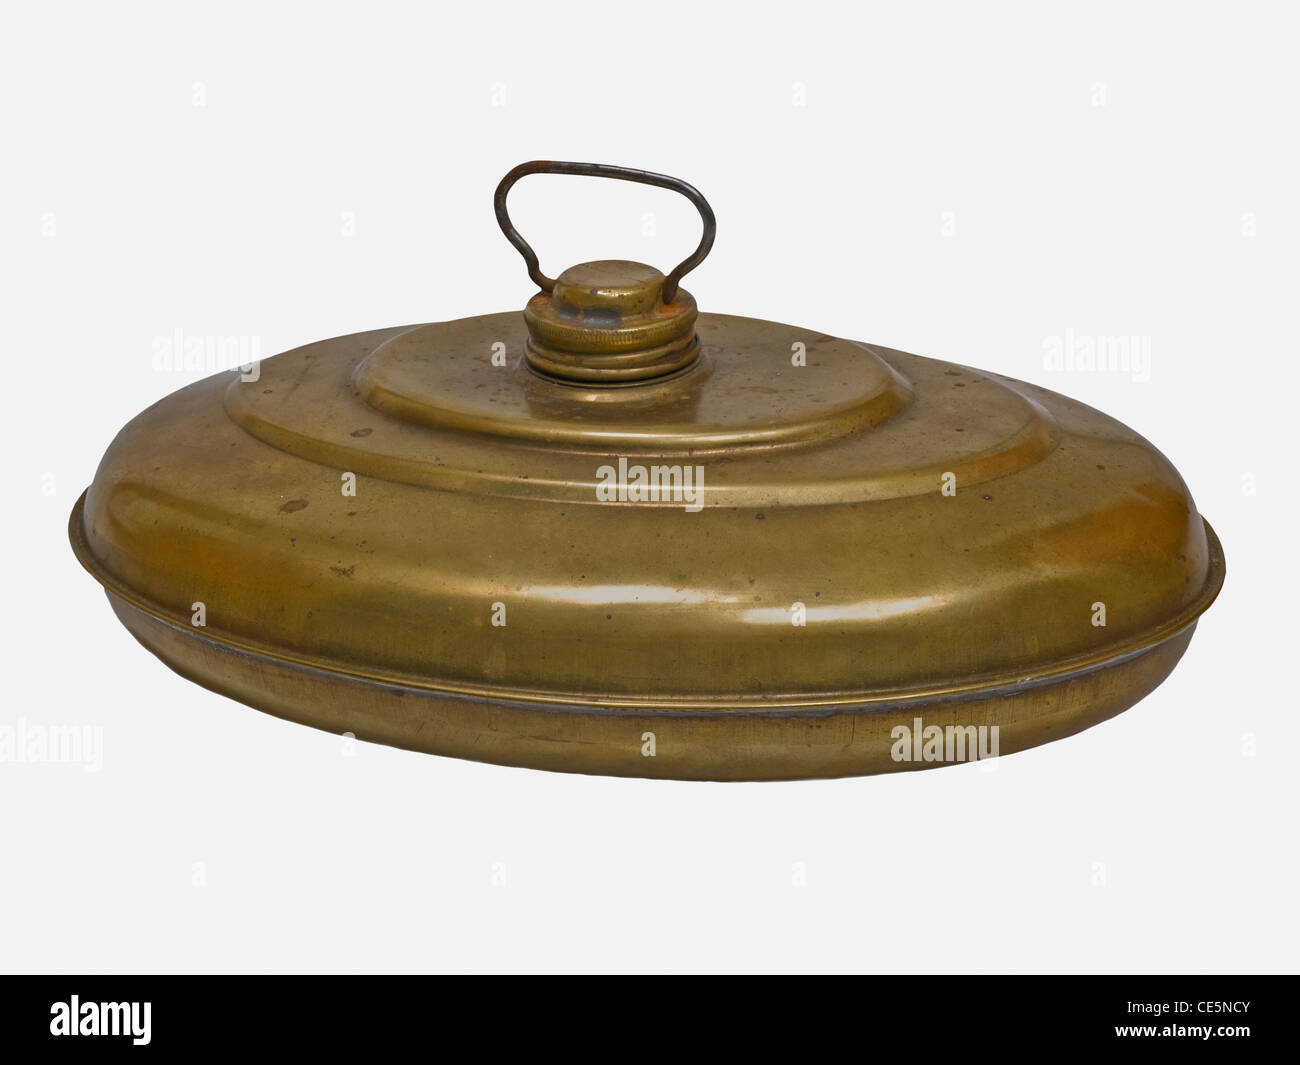 Detailansicht einer alten Wärmflasche aus Metall | photo de détail une vieille bouteille à eau chaude métallique Banque D'Images